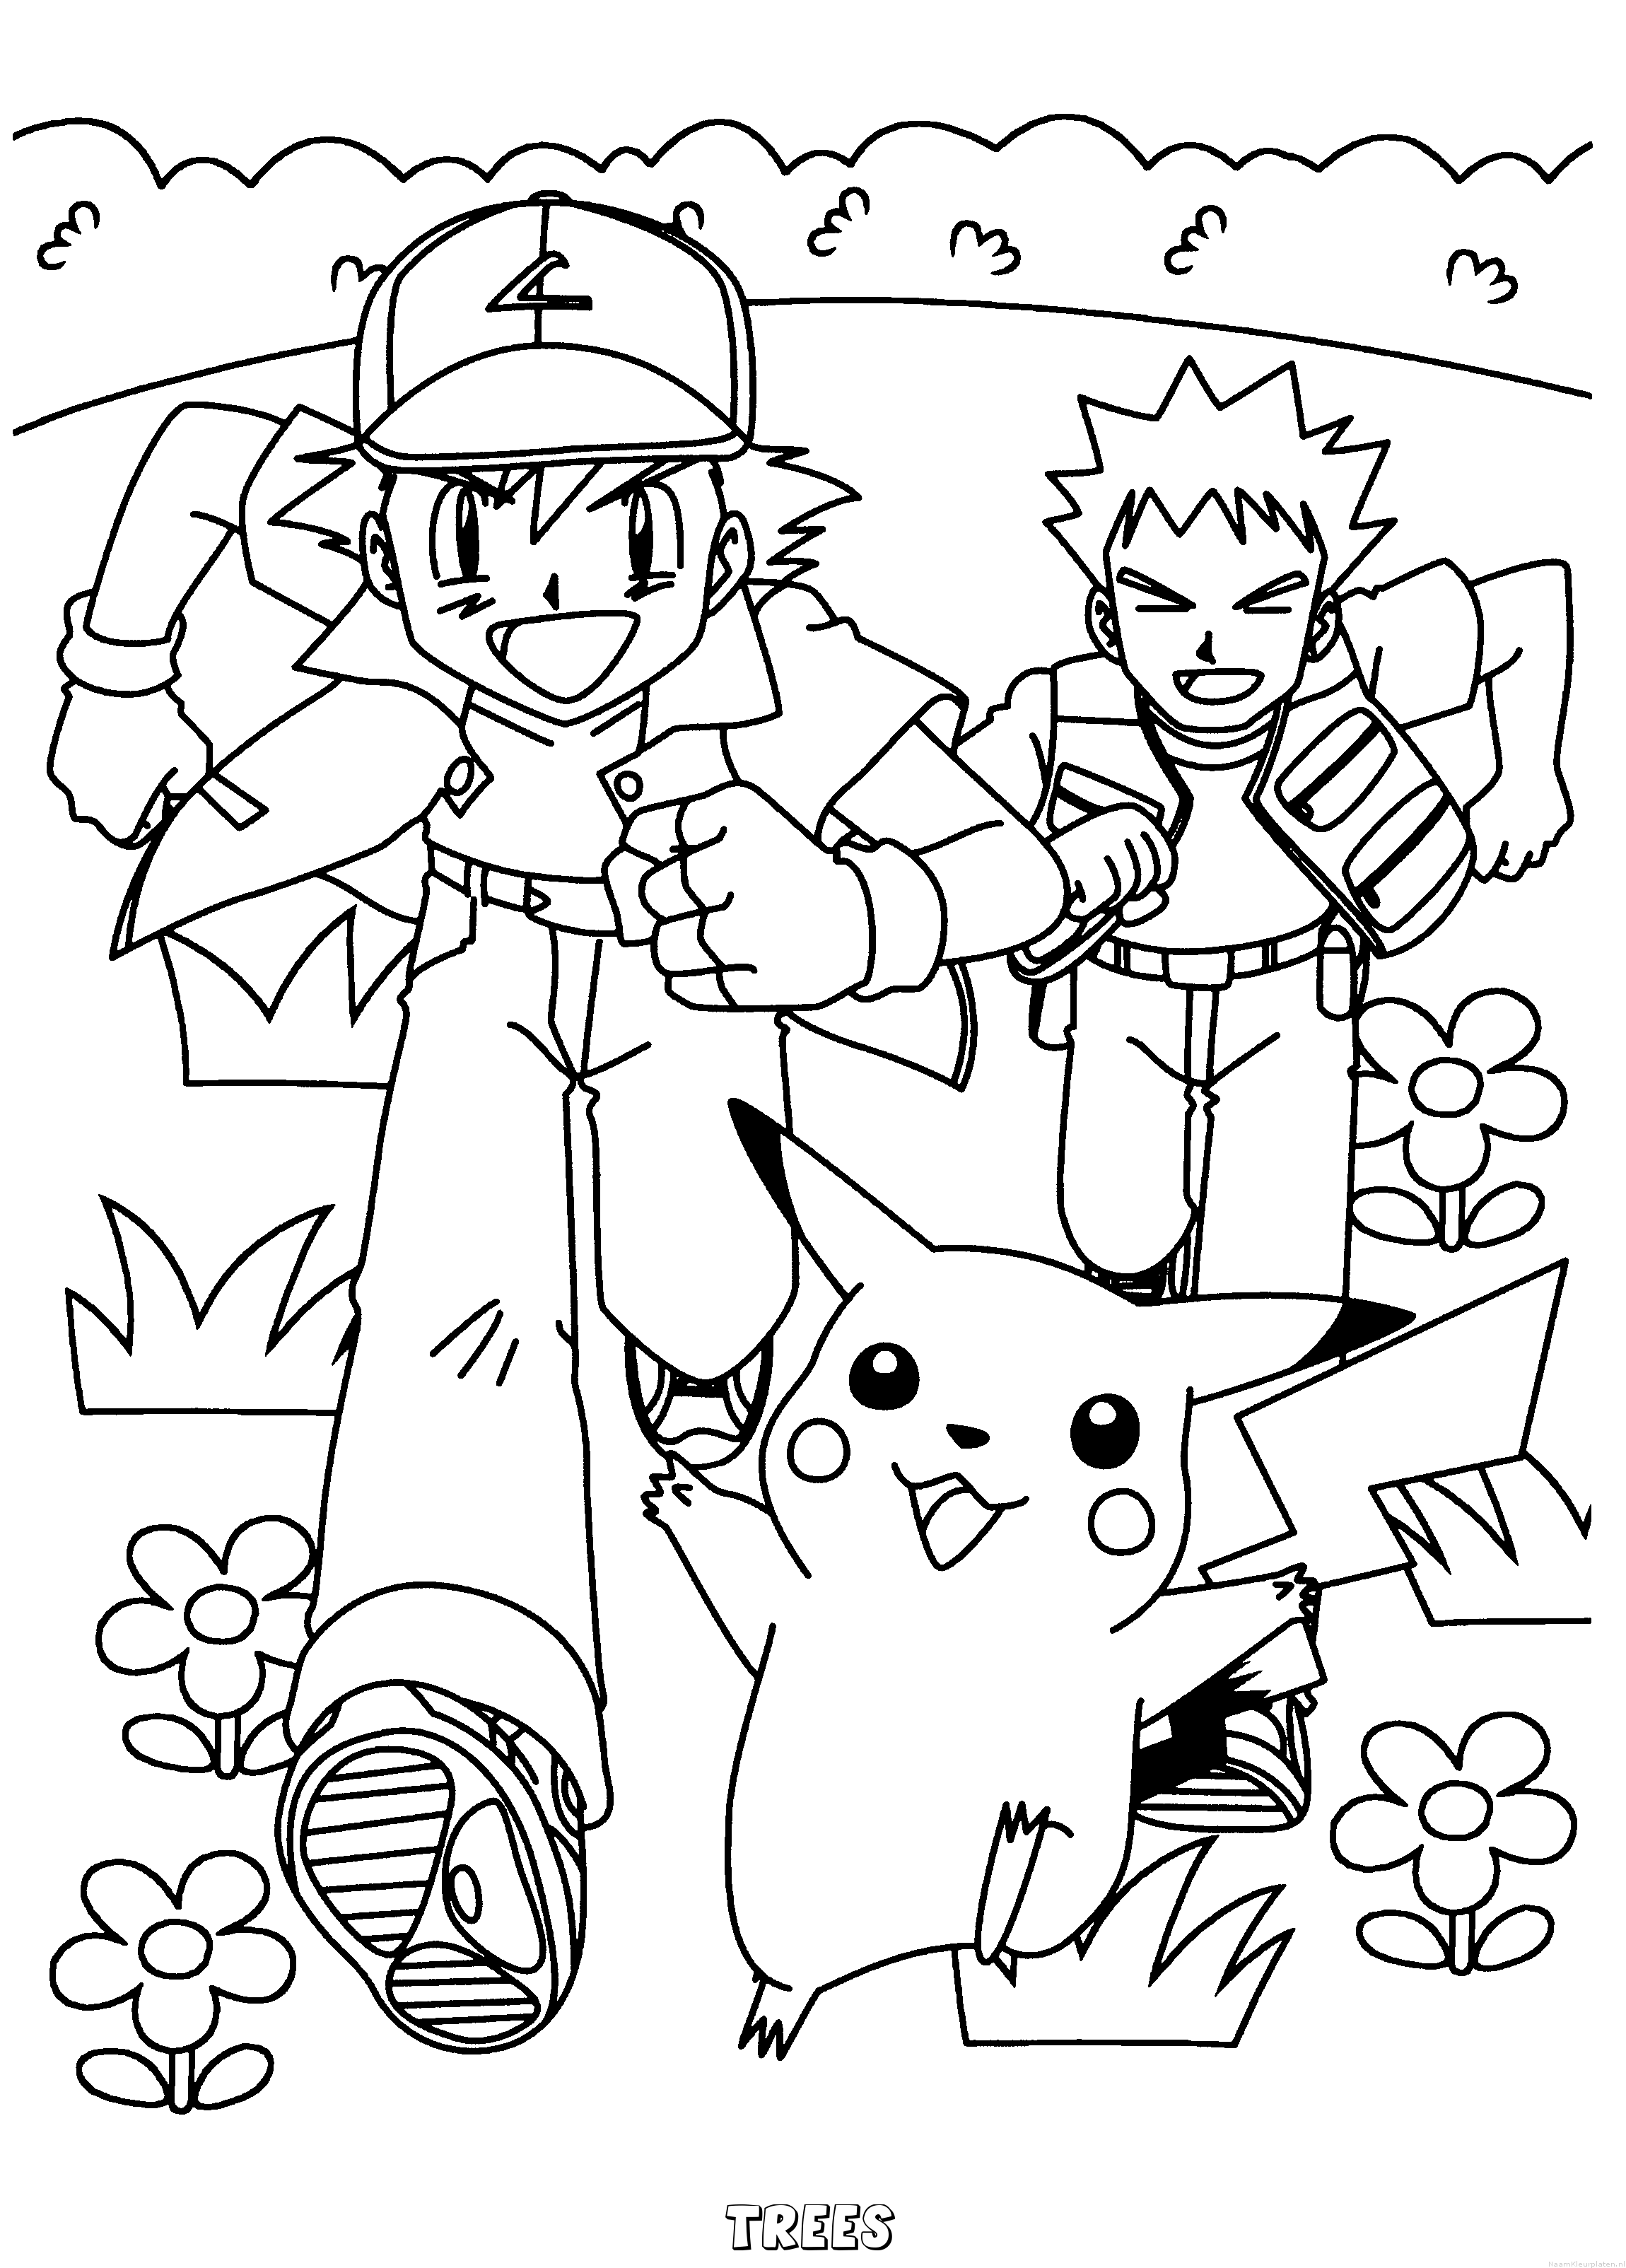 Trees pokemon